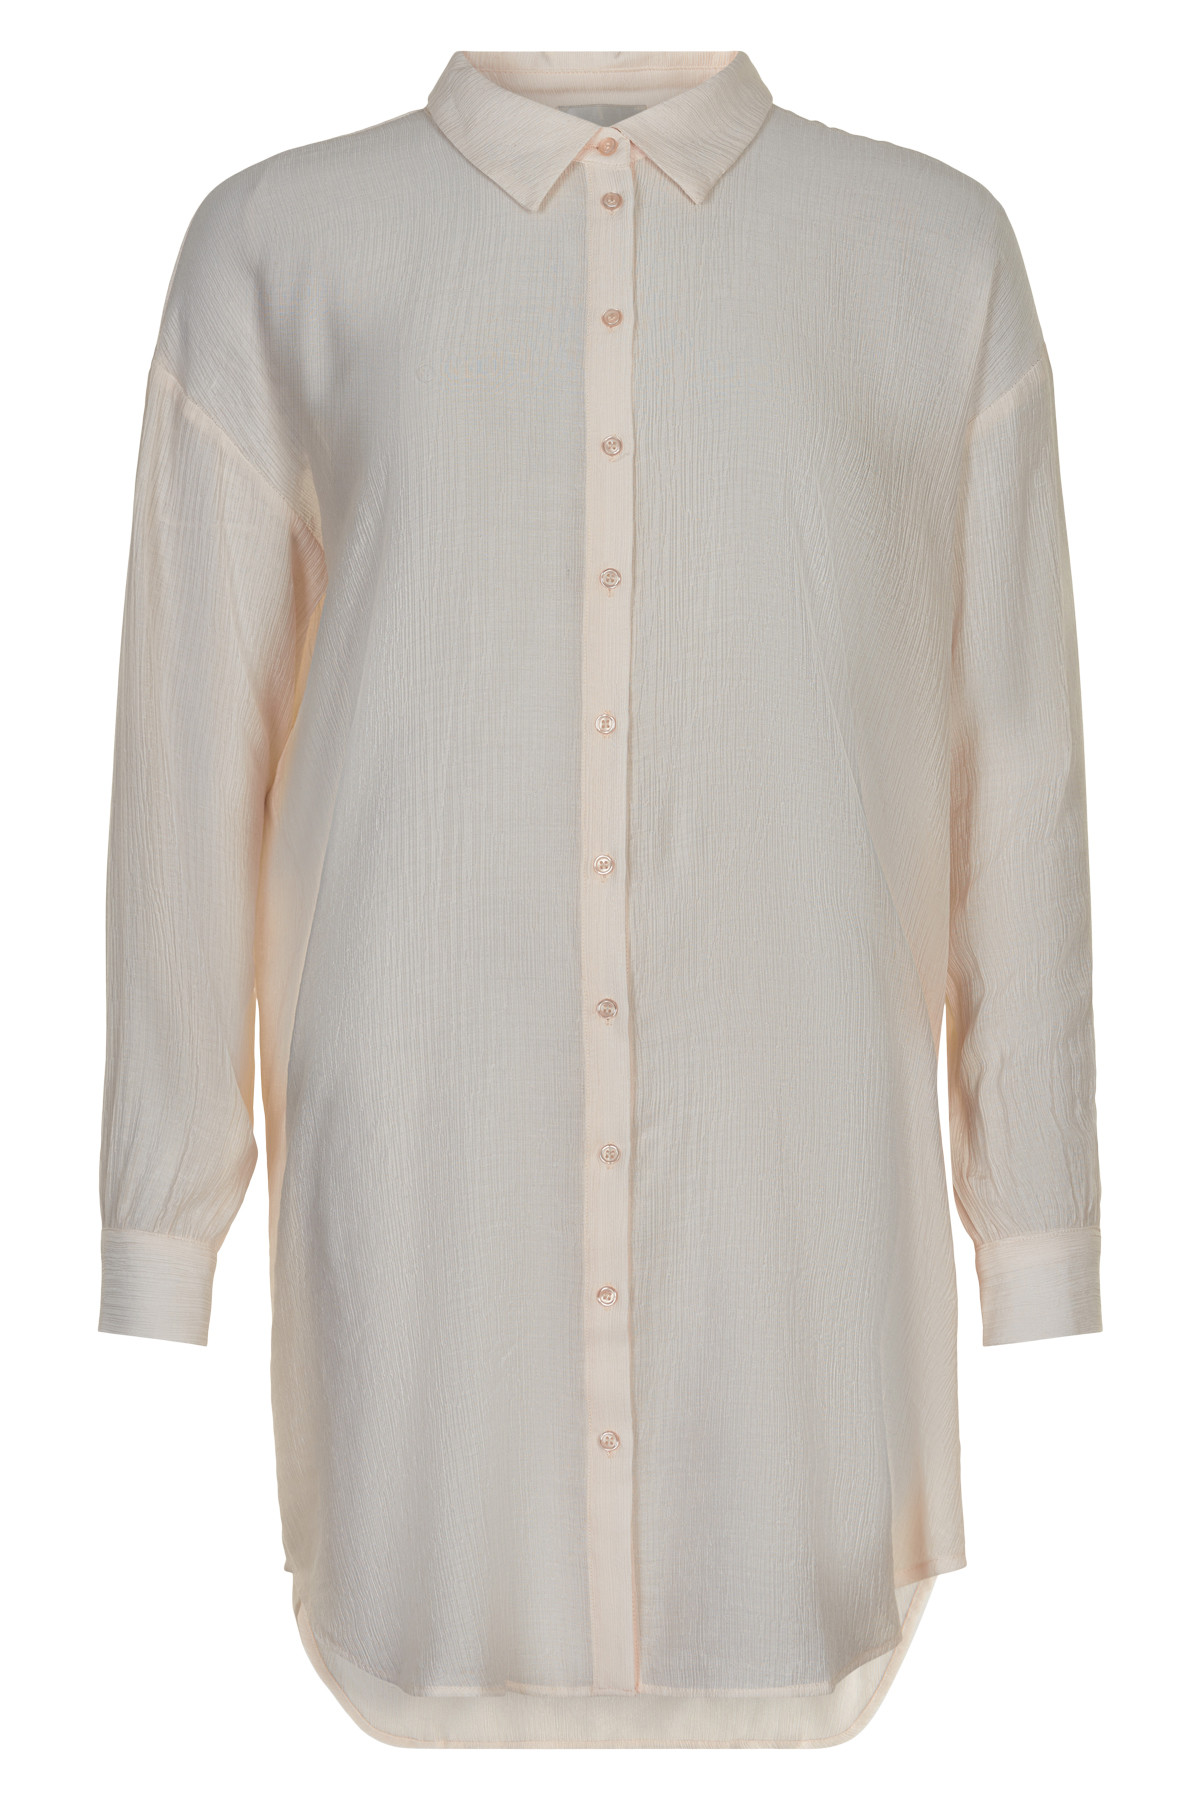 7: My Essential Wardrobe Alma Lang Skjorte, Farve: Hvid, Størrelse: 34, Dame